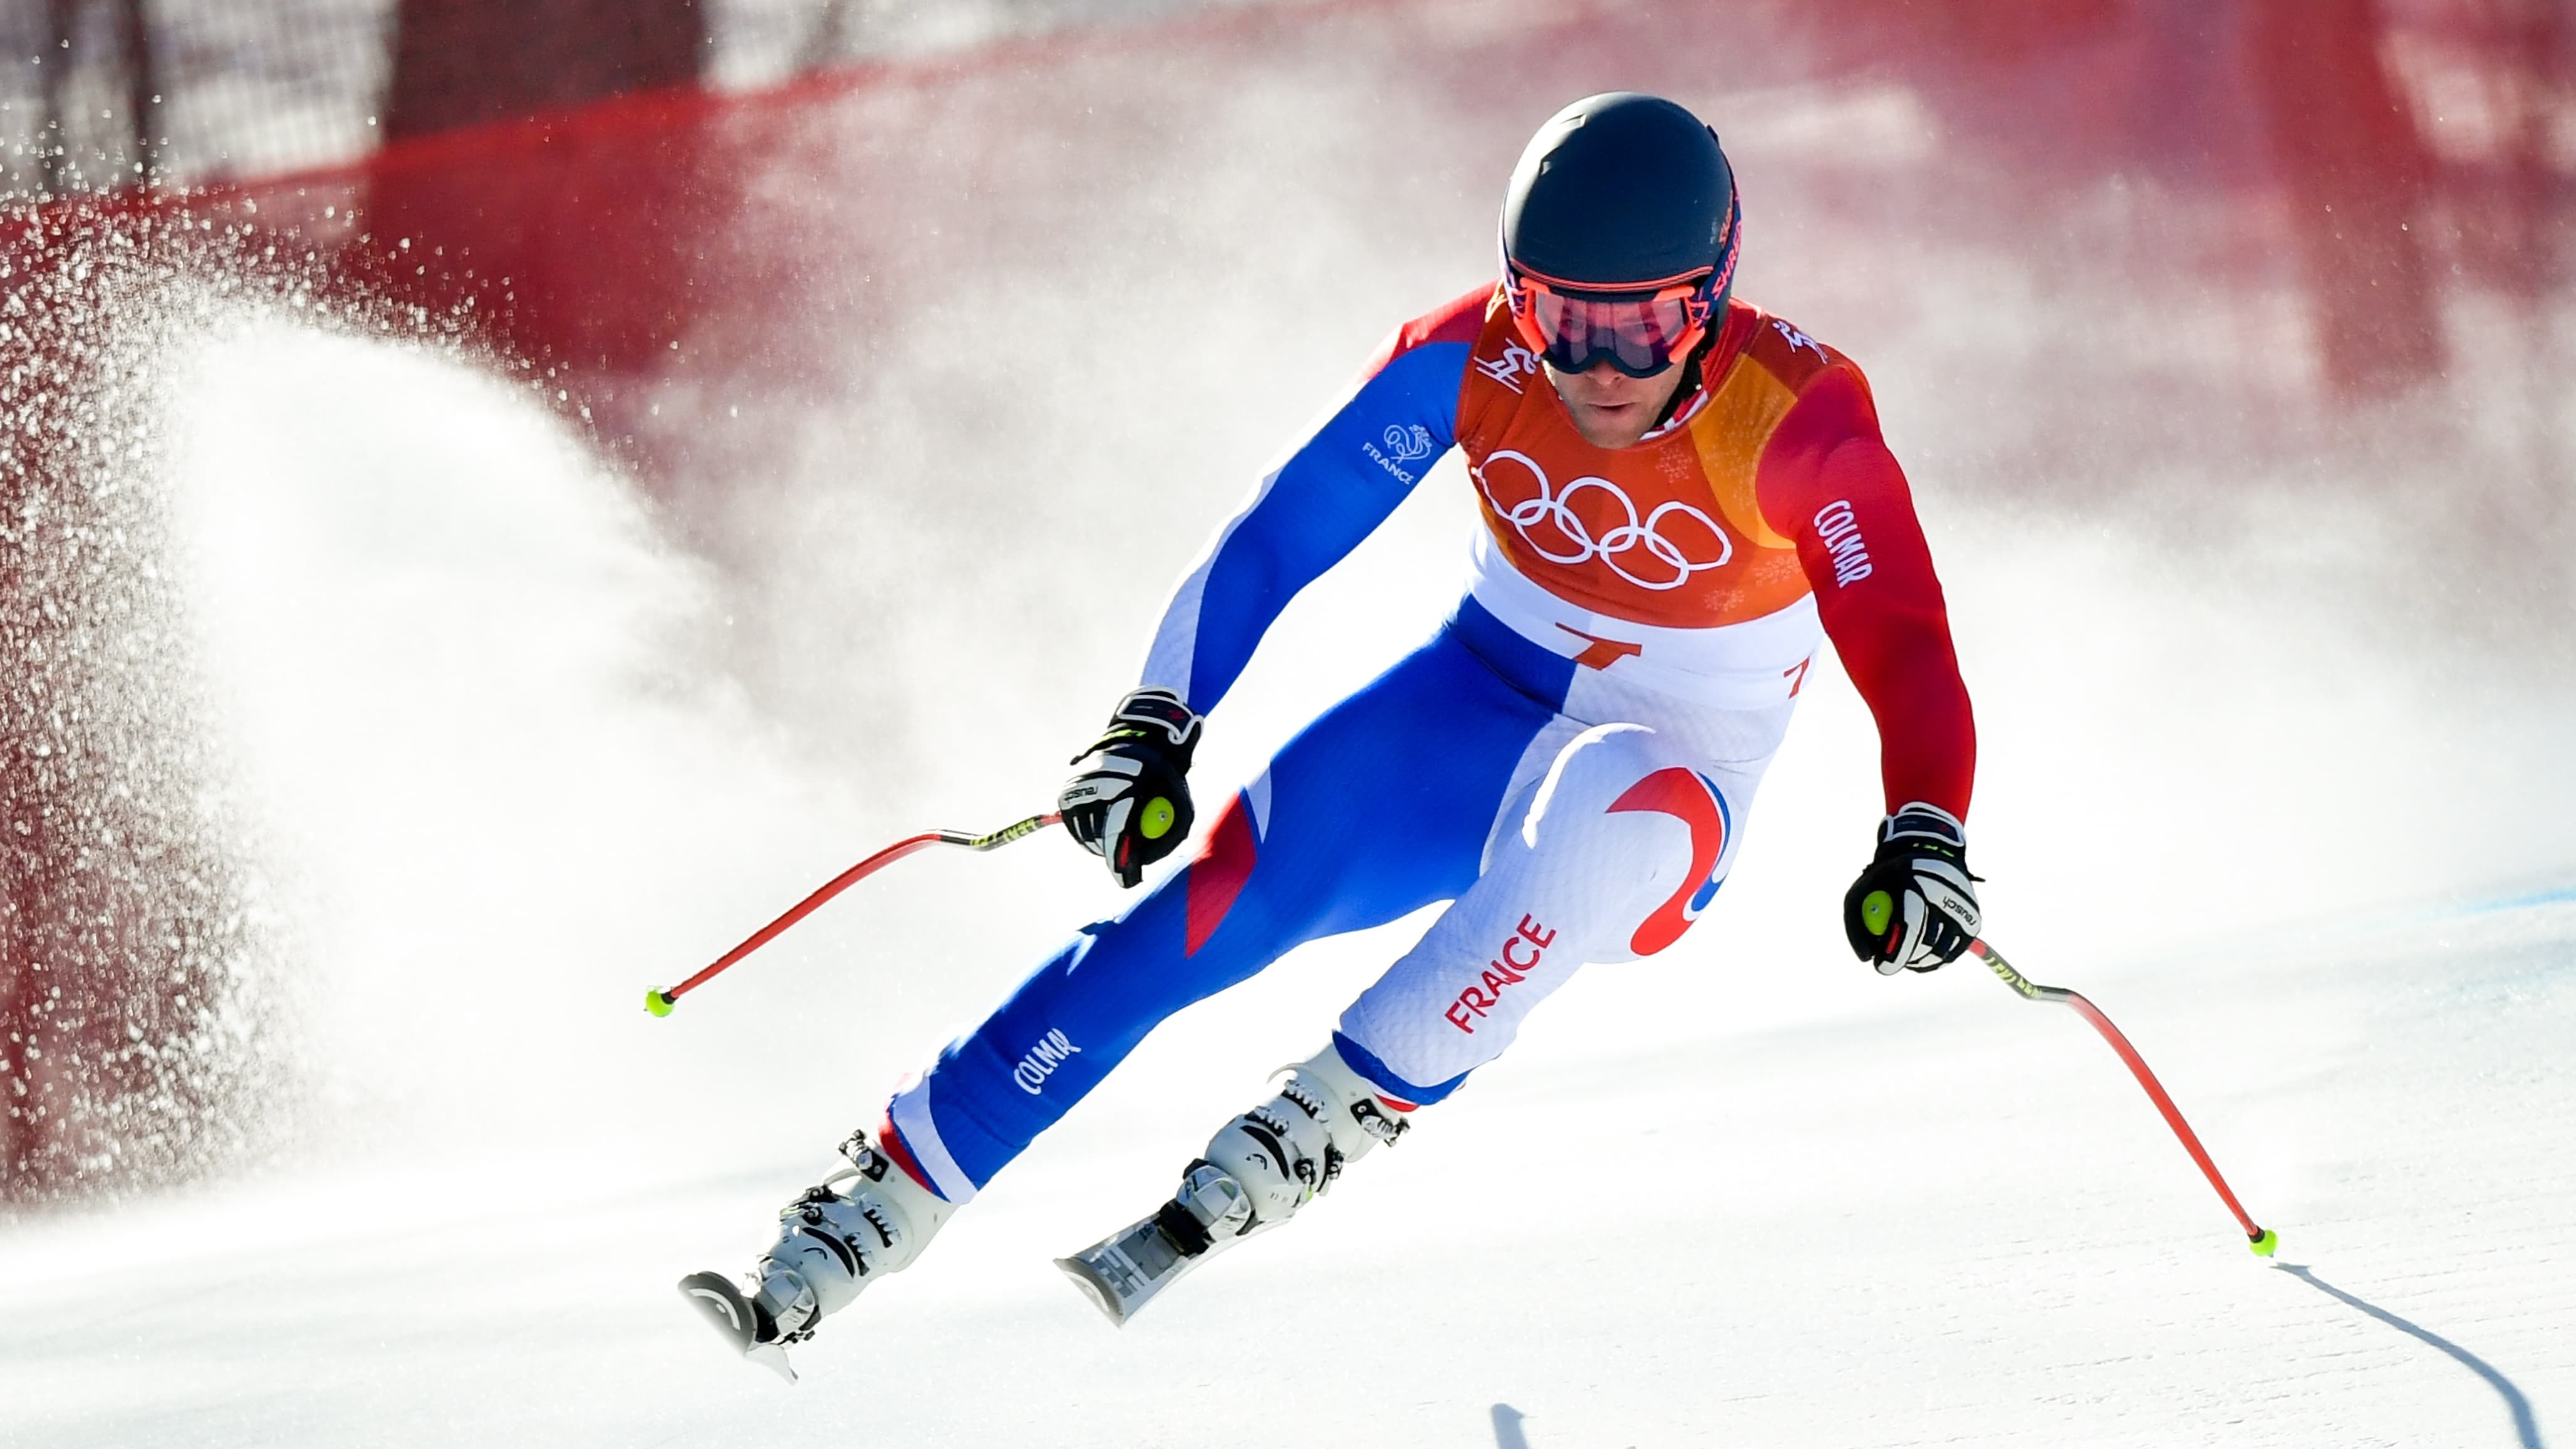 VIDEO. JO 2018 - Ski alpin - Descente Femmes. La course en caméra embarquée  - JO Paris 2024 : les Jeux Olympiques et paralympiques d'été